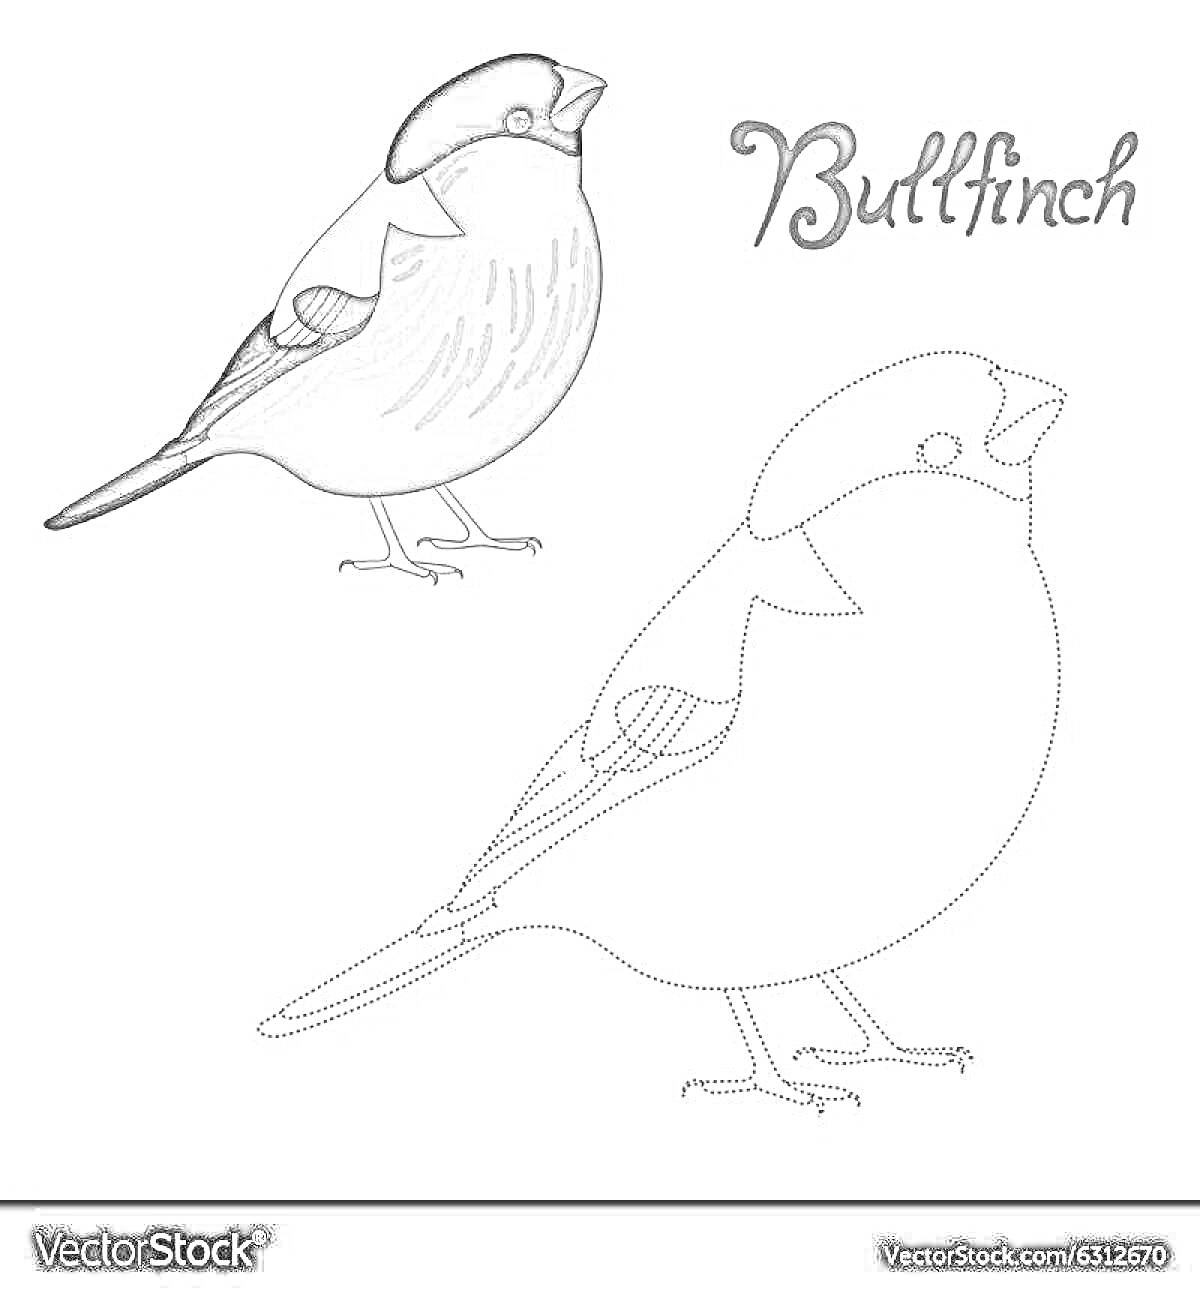 Раскраска Раскраска снегирь, две птицы - раскрашенная и контурная, надпись 